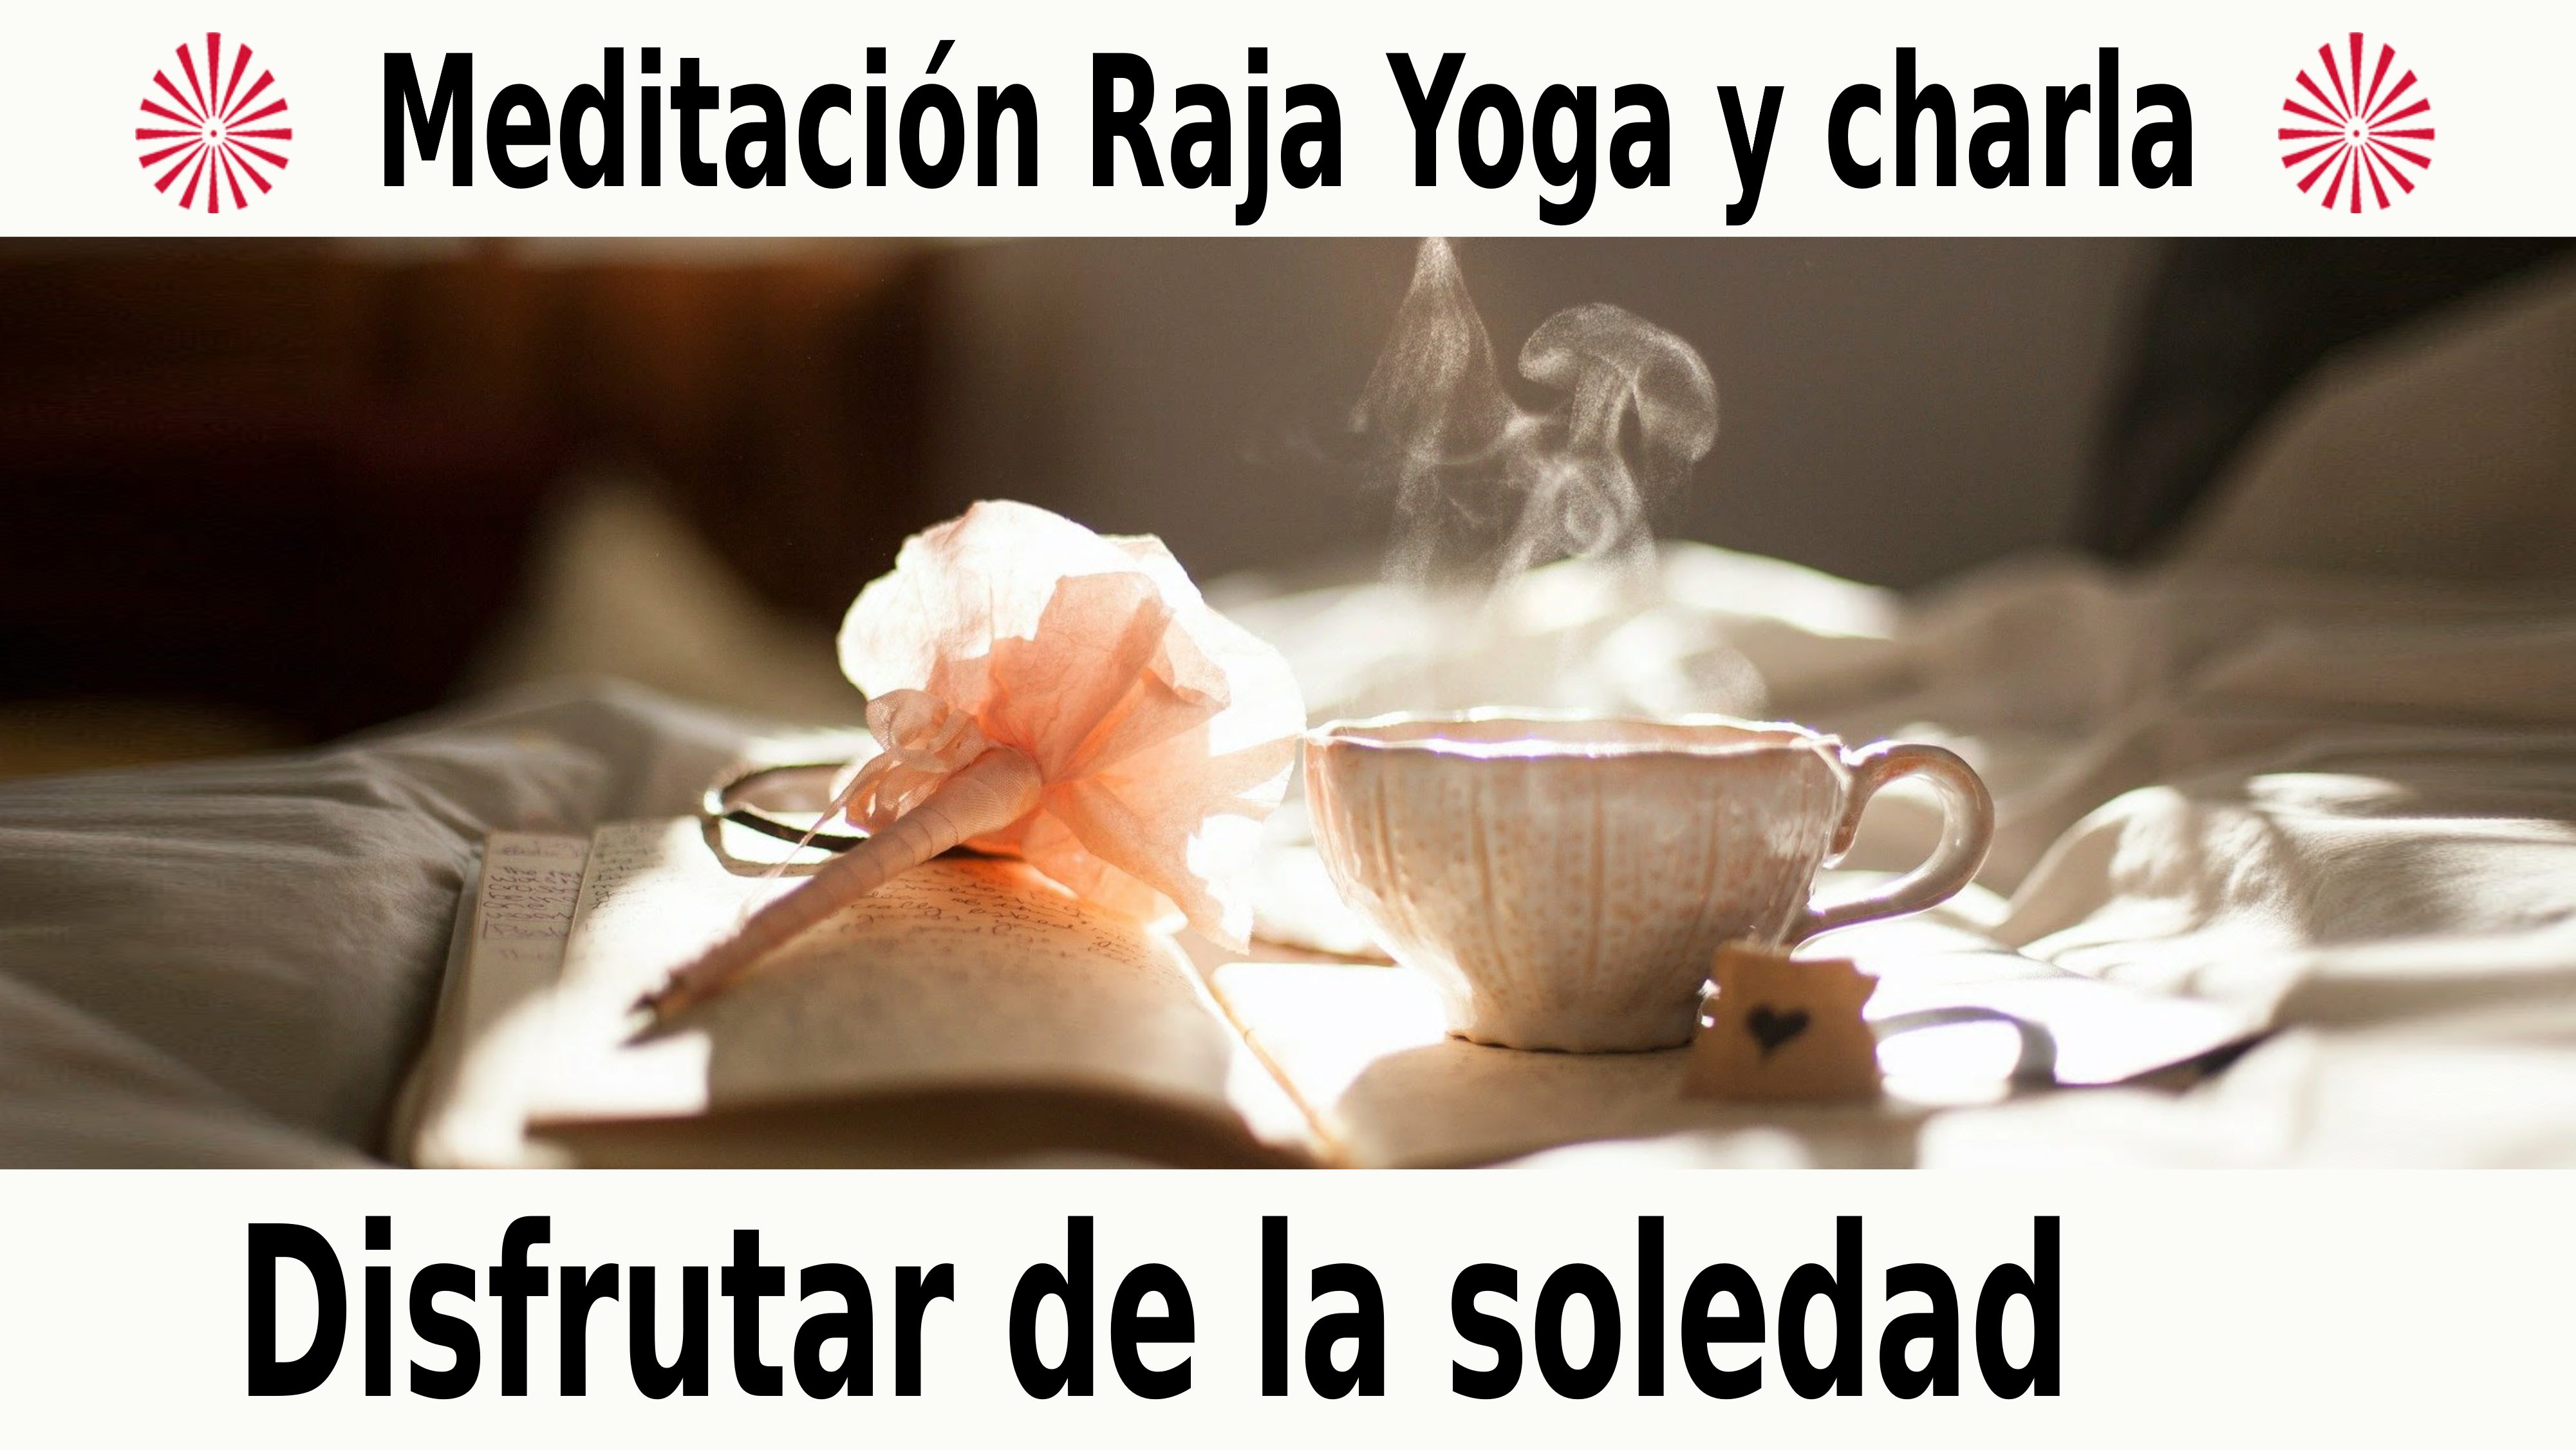 Meditación Raja Yoga y charla: Disfrutar de la soledad (13 Diciembre 2020) On-line desde Valencia